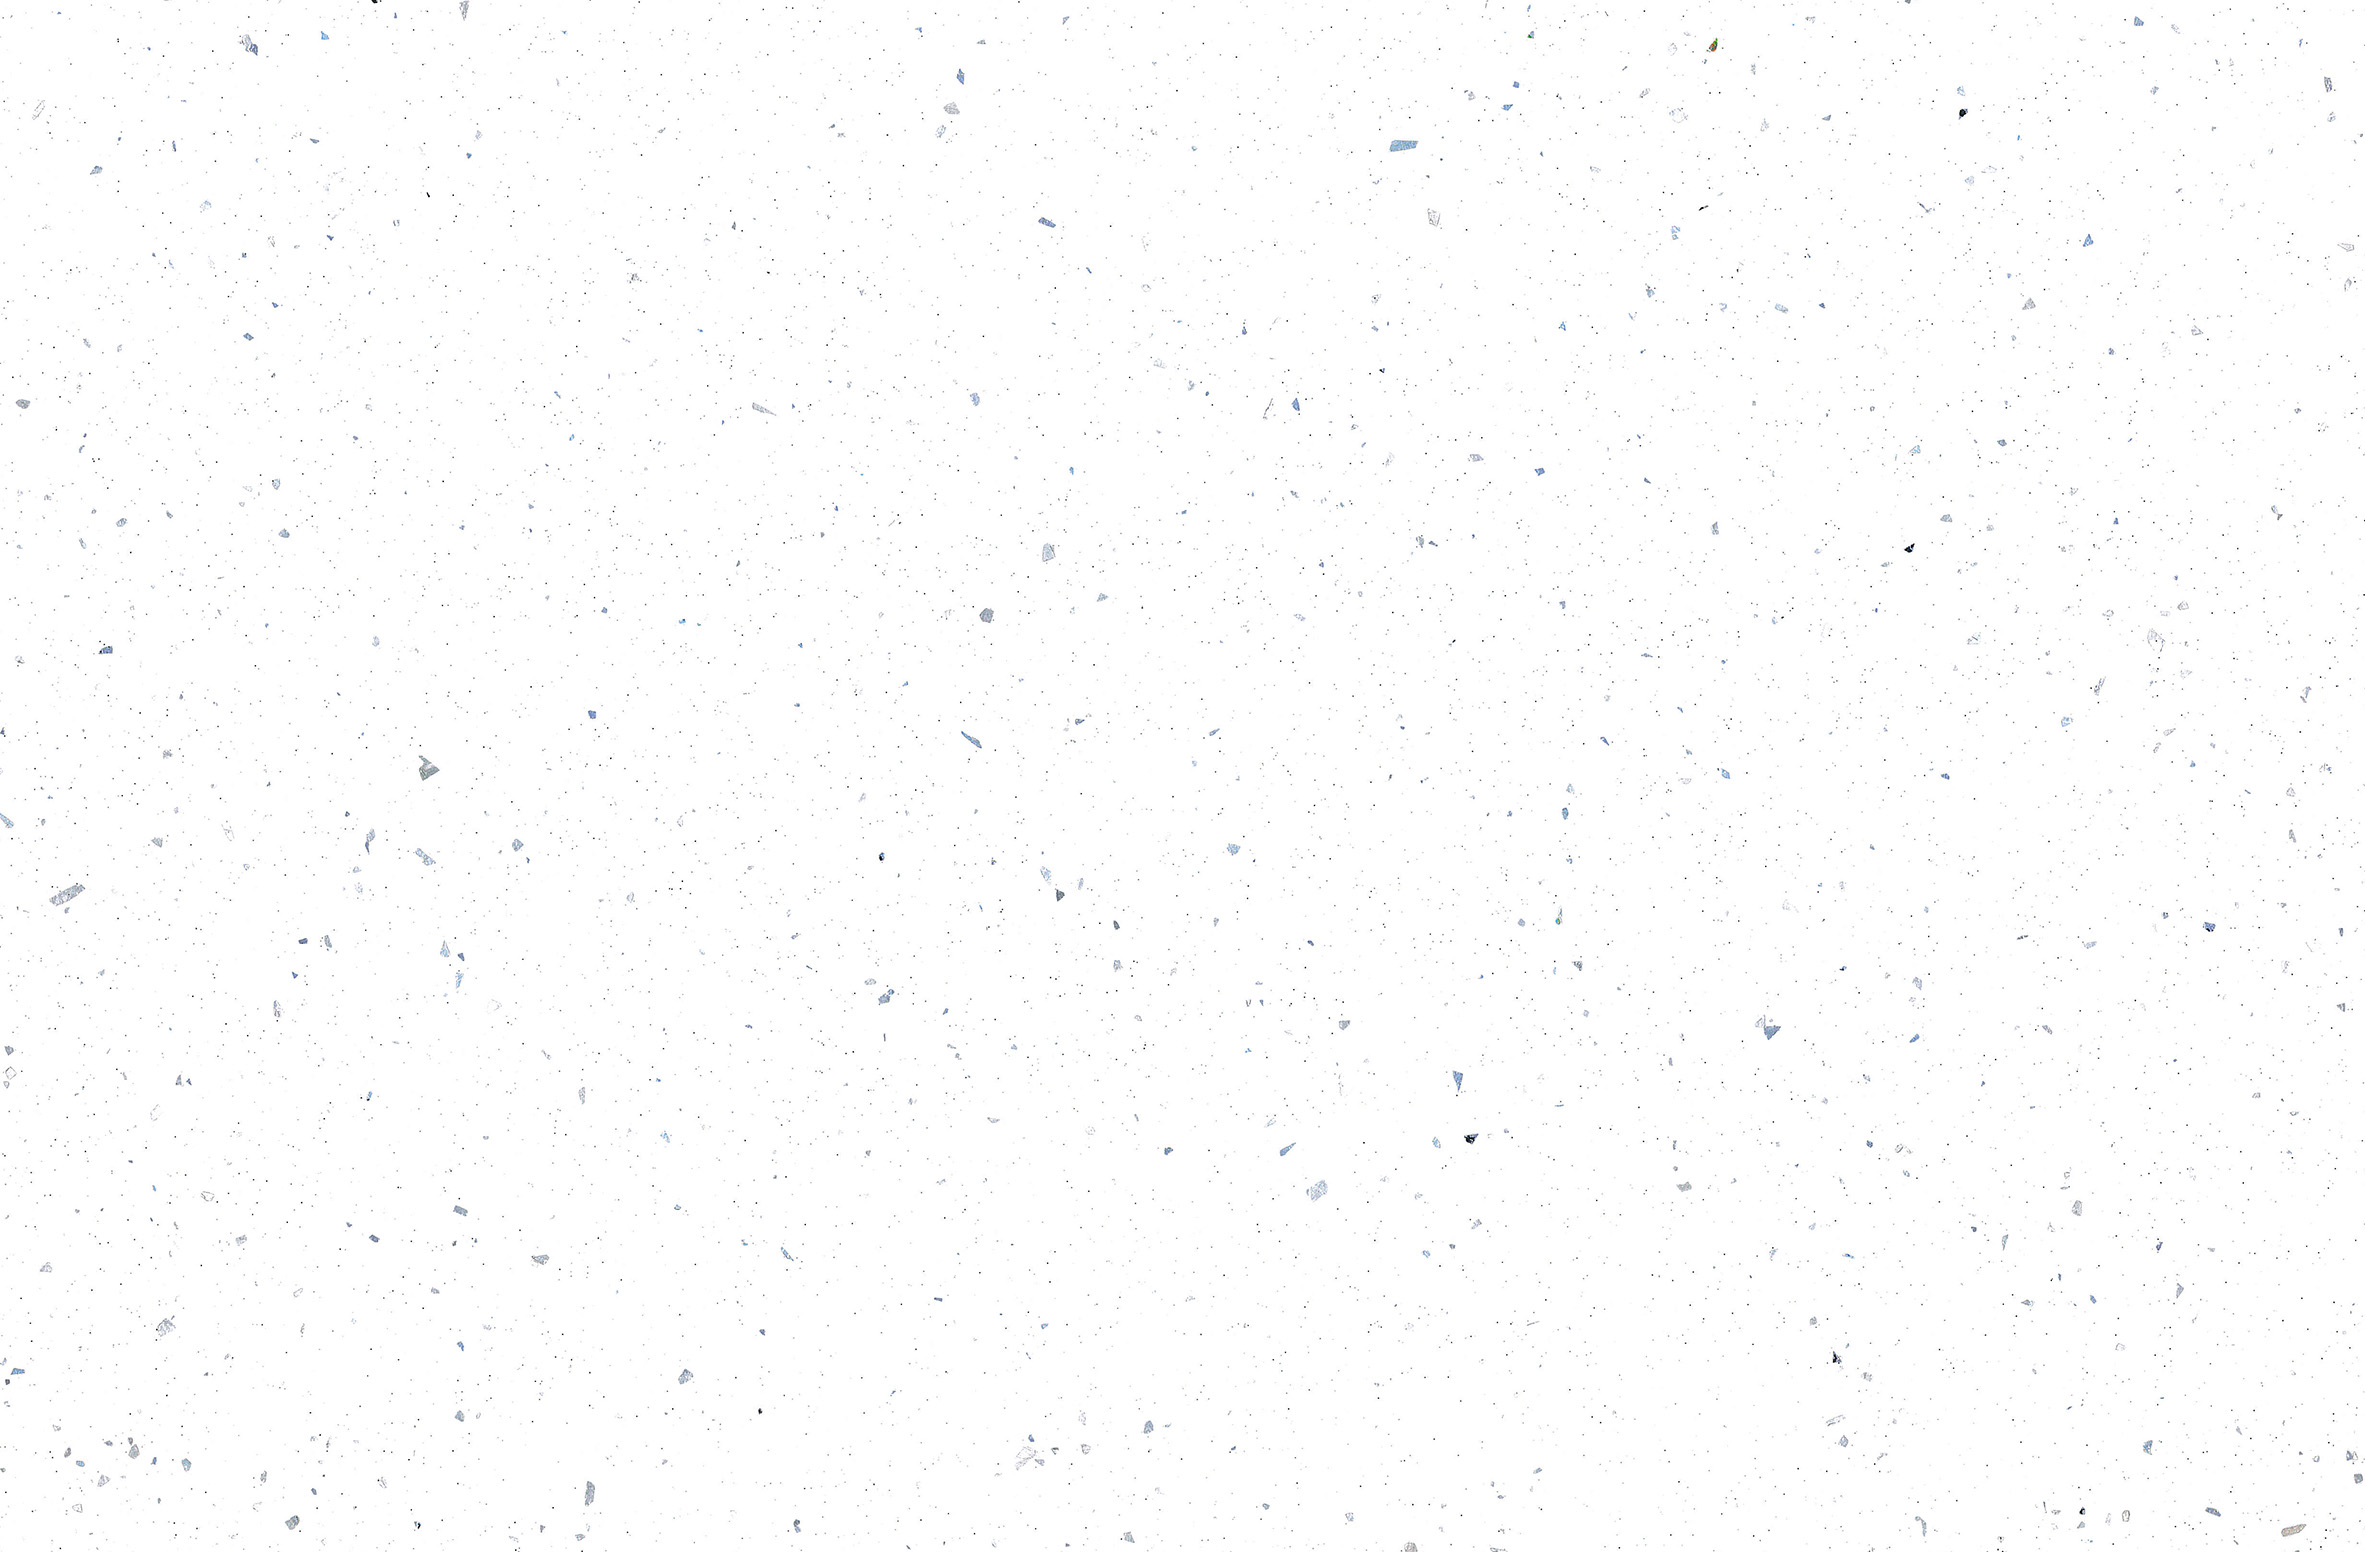 Duarti By Calypso Glacial Burst Postformed Slimline Worktop - 2000 x 230 x 22mm